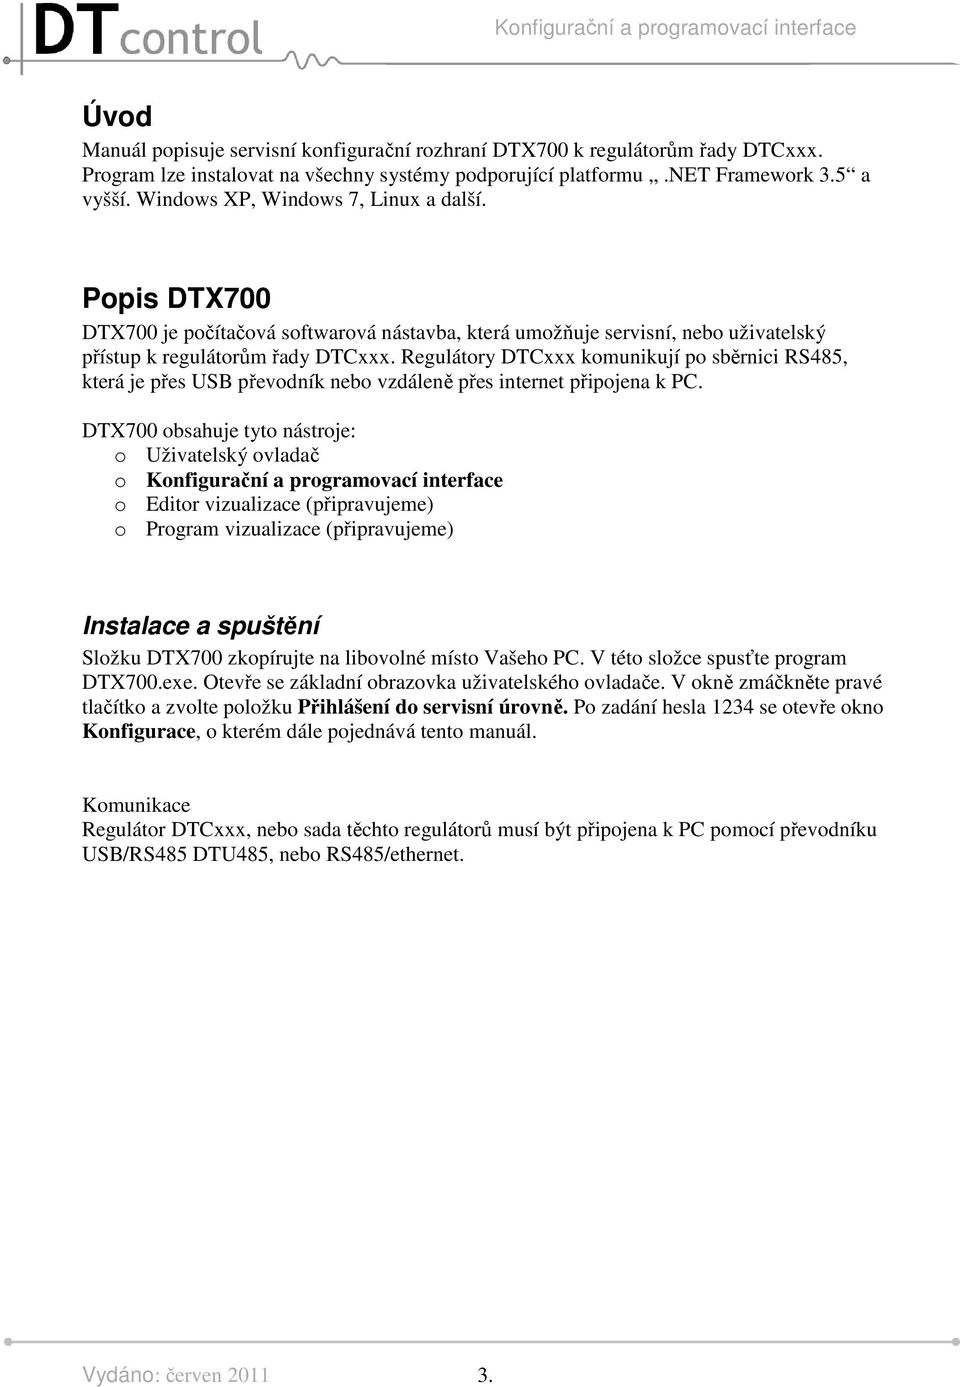 Regulátory DTCxxx komunikují po sběrnici RS485, která je přes USB převodník nebo vzdáleně přes internet připojena k PC.